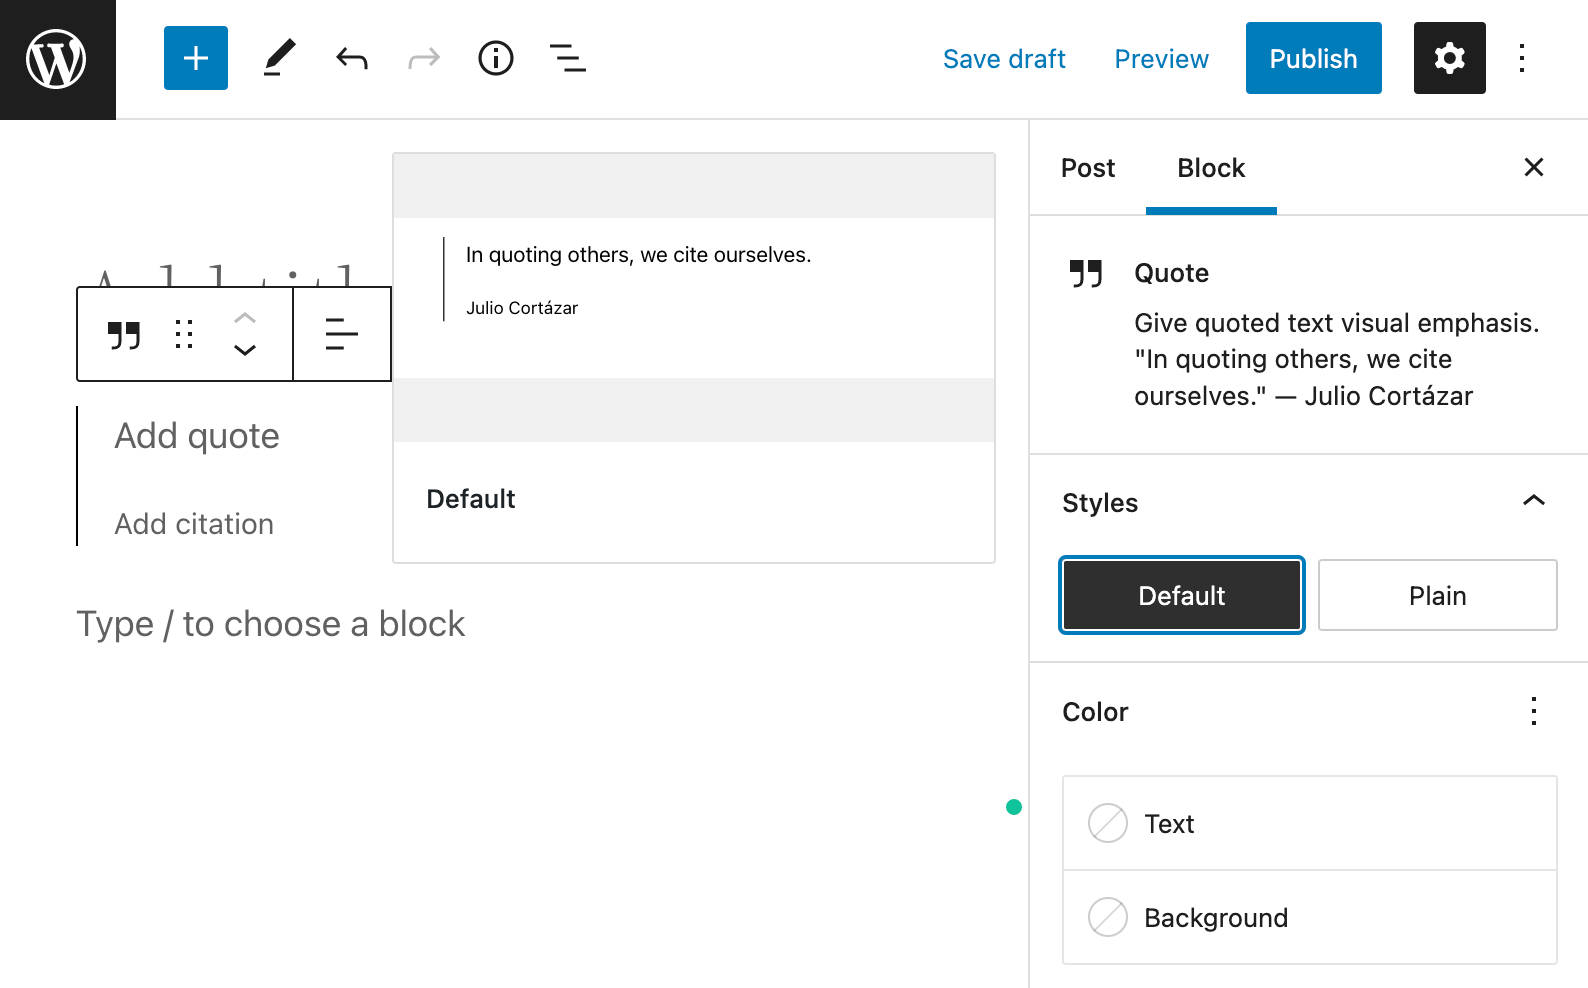 Vista previa del estilo de bloque en WordPress 6.0.